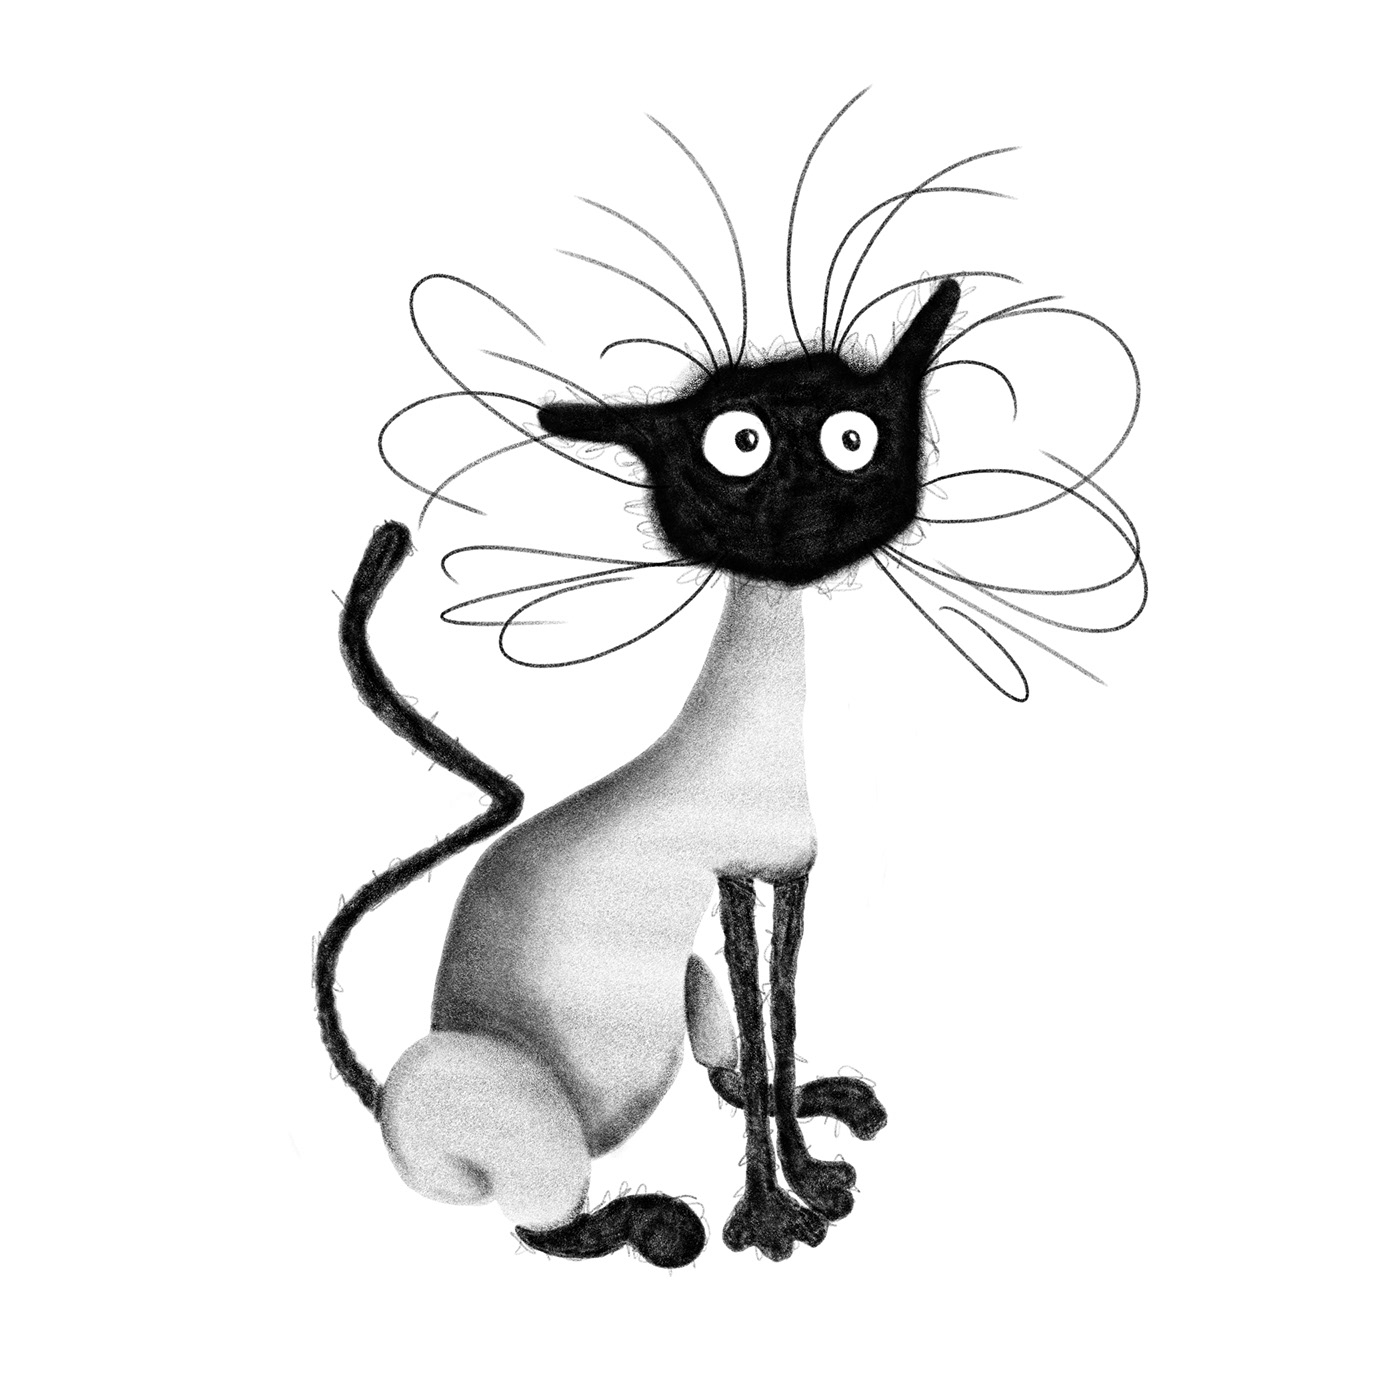 animales Arte visual blanco y negro ilustracion ilustraciones lápiz digital literatura infantil sombras